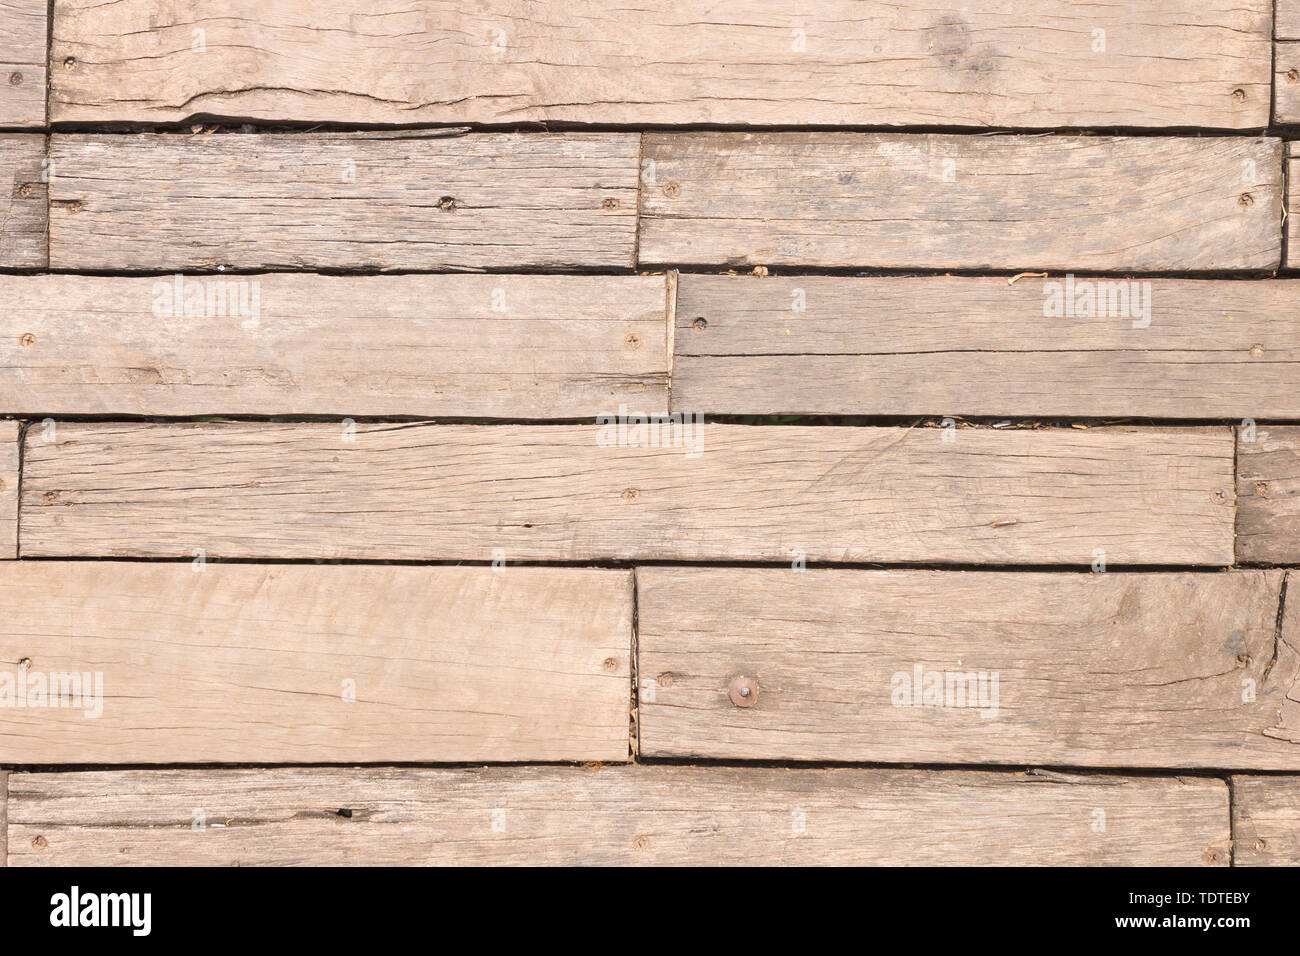 Texture gỗ sồi sẽ khiến bạn say đắm bởi vẻ đẹp tự nhiên và mộc mạc của nó. Hãy ngắm nhìn bức ảnh với texture gỗ sồi này để tìm thấy ý tưởng trang trí tuyệt vời cho căn phòng của bạn.